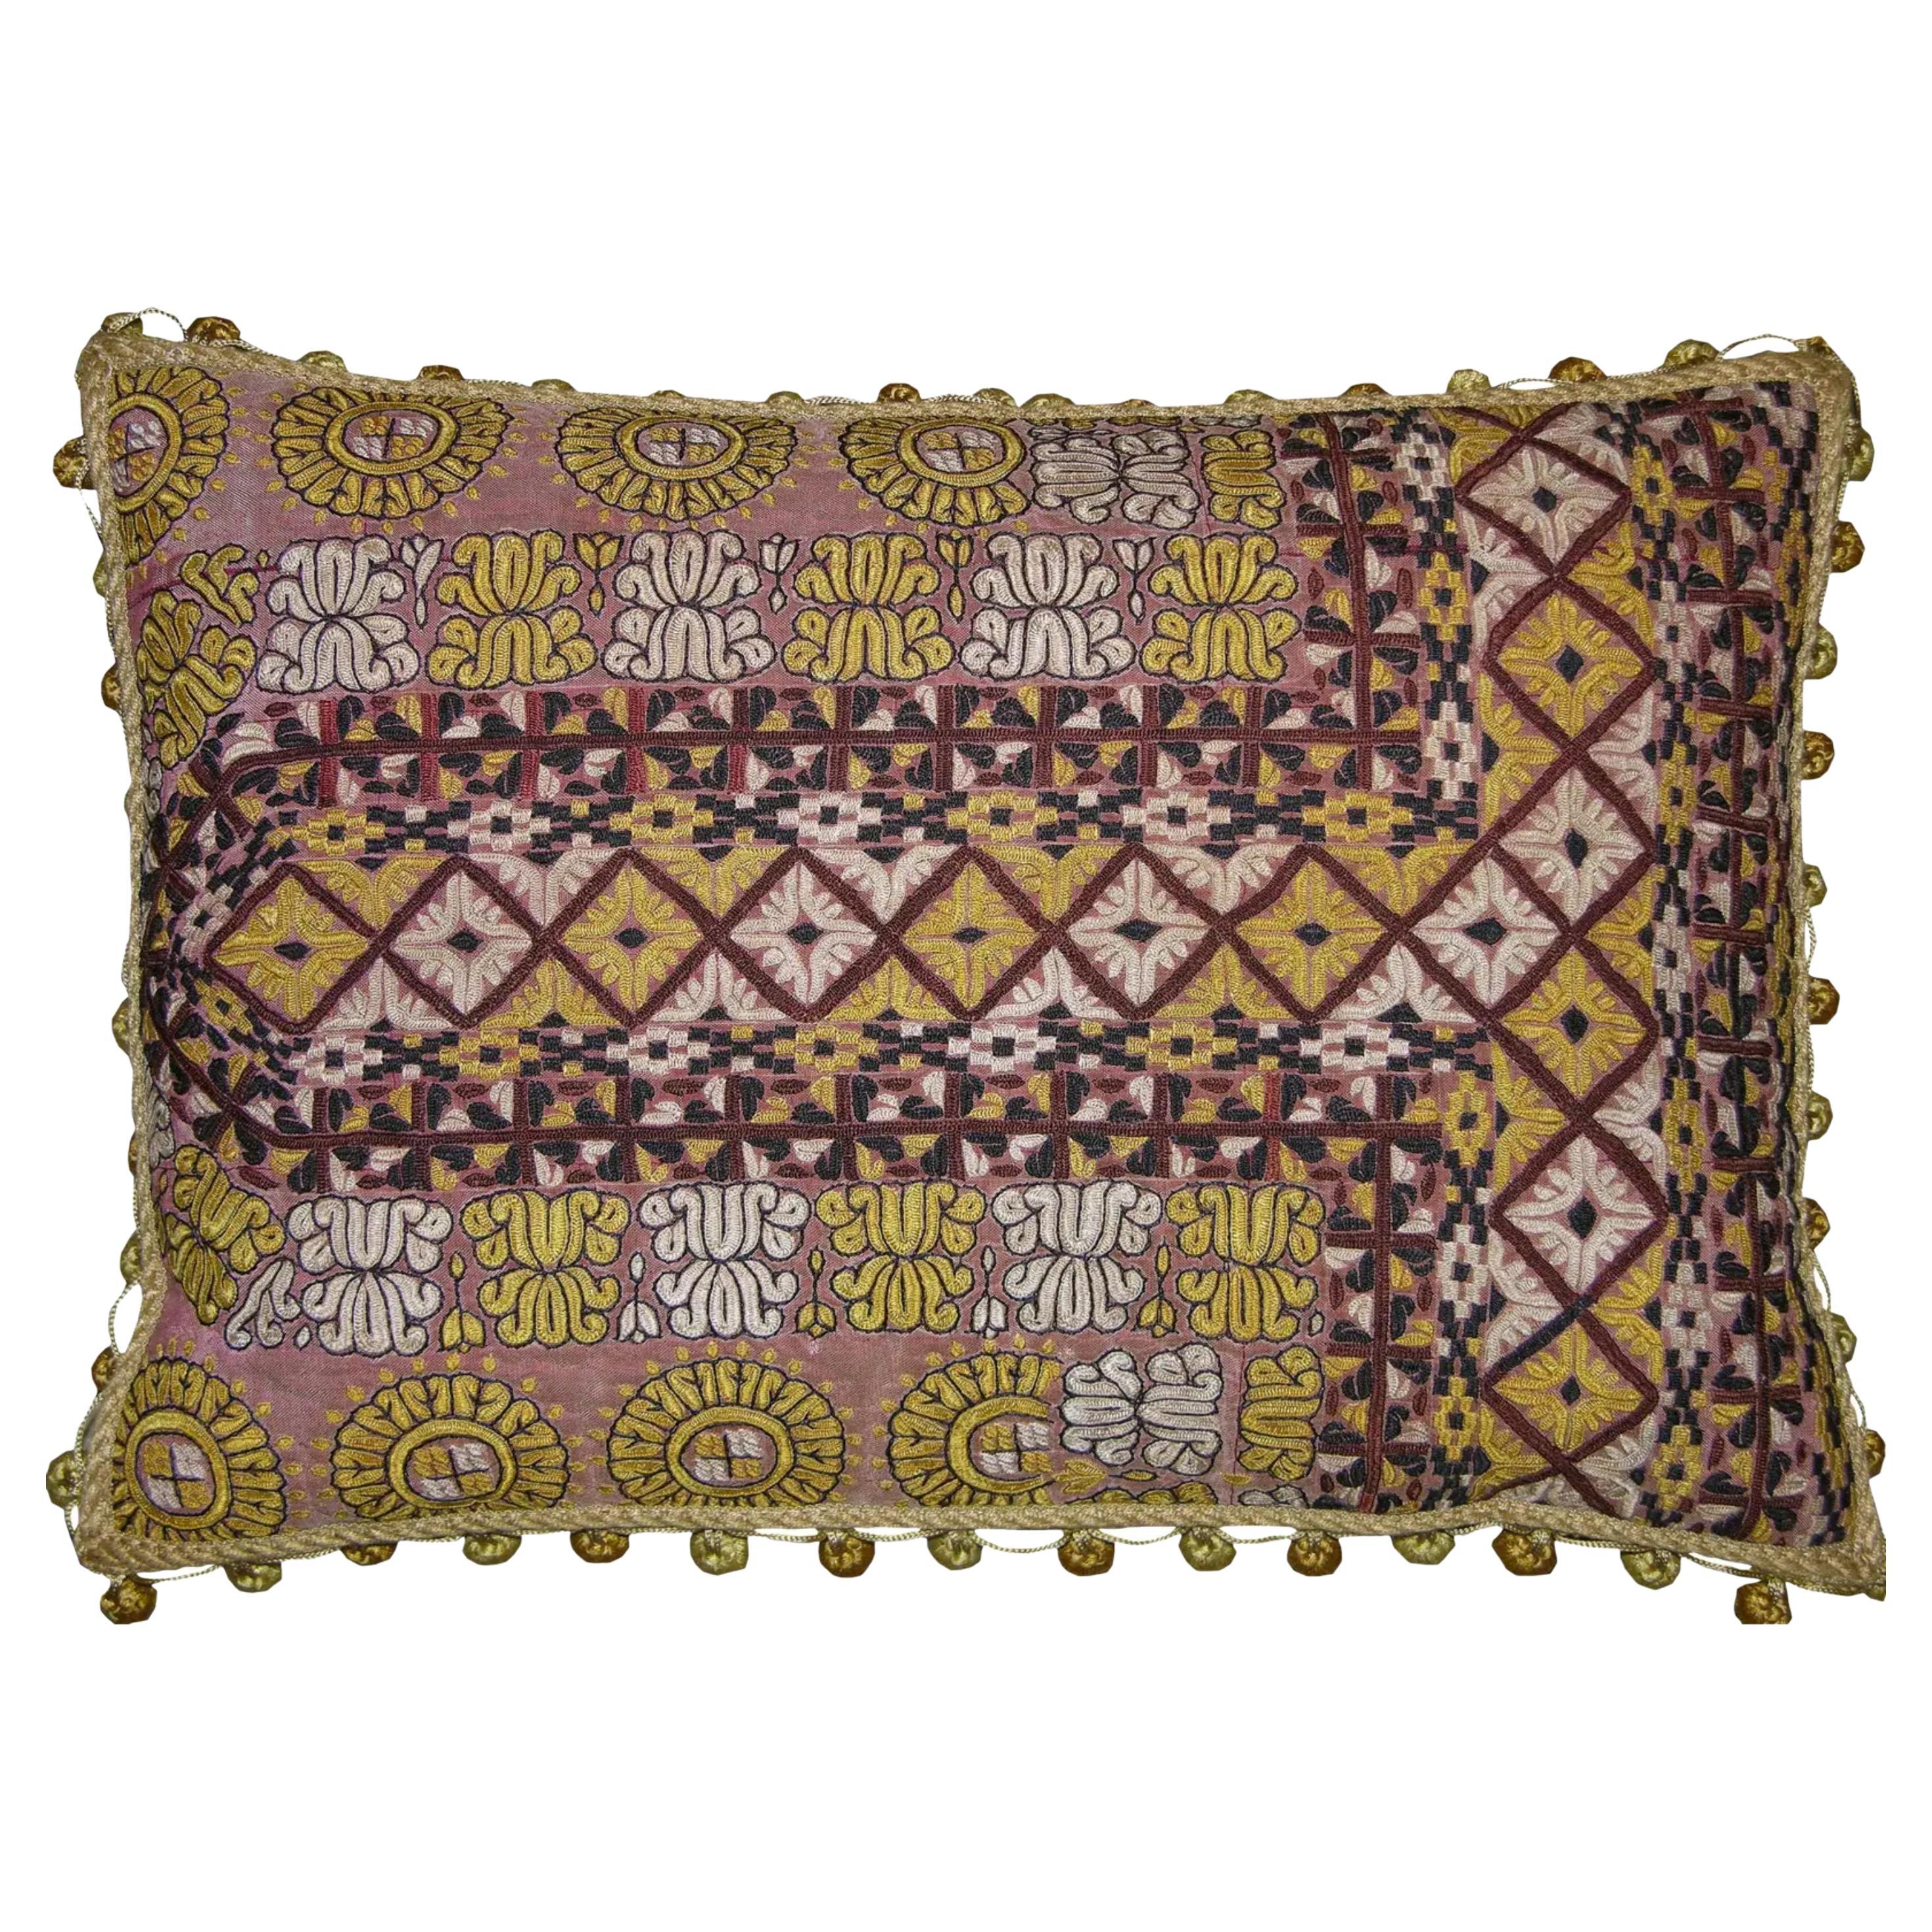 1850 Antique Uzbek Pillow - 20'' X 14'' For Sale